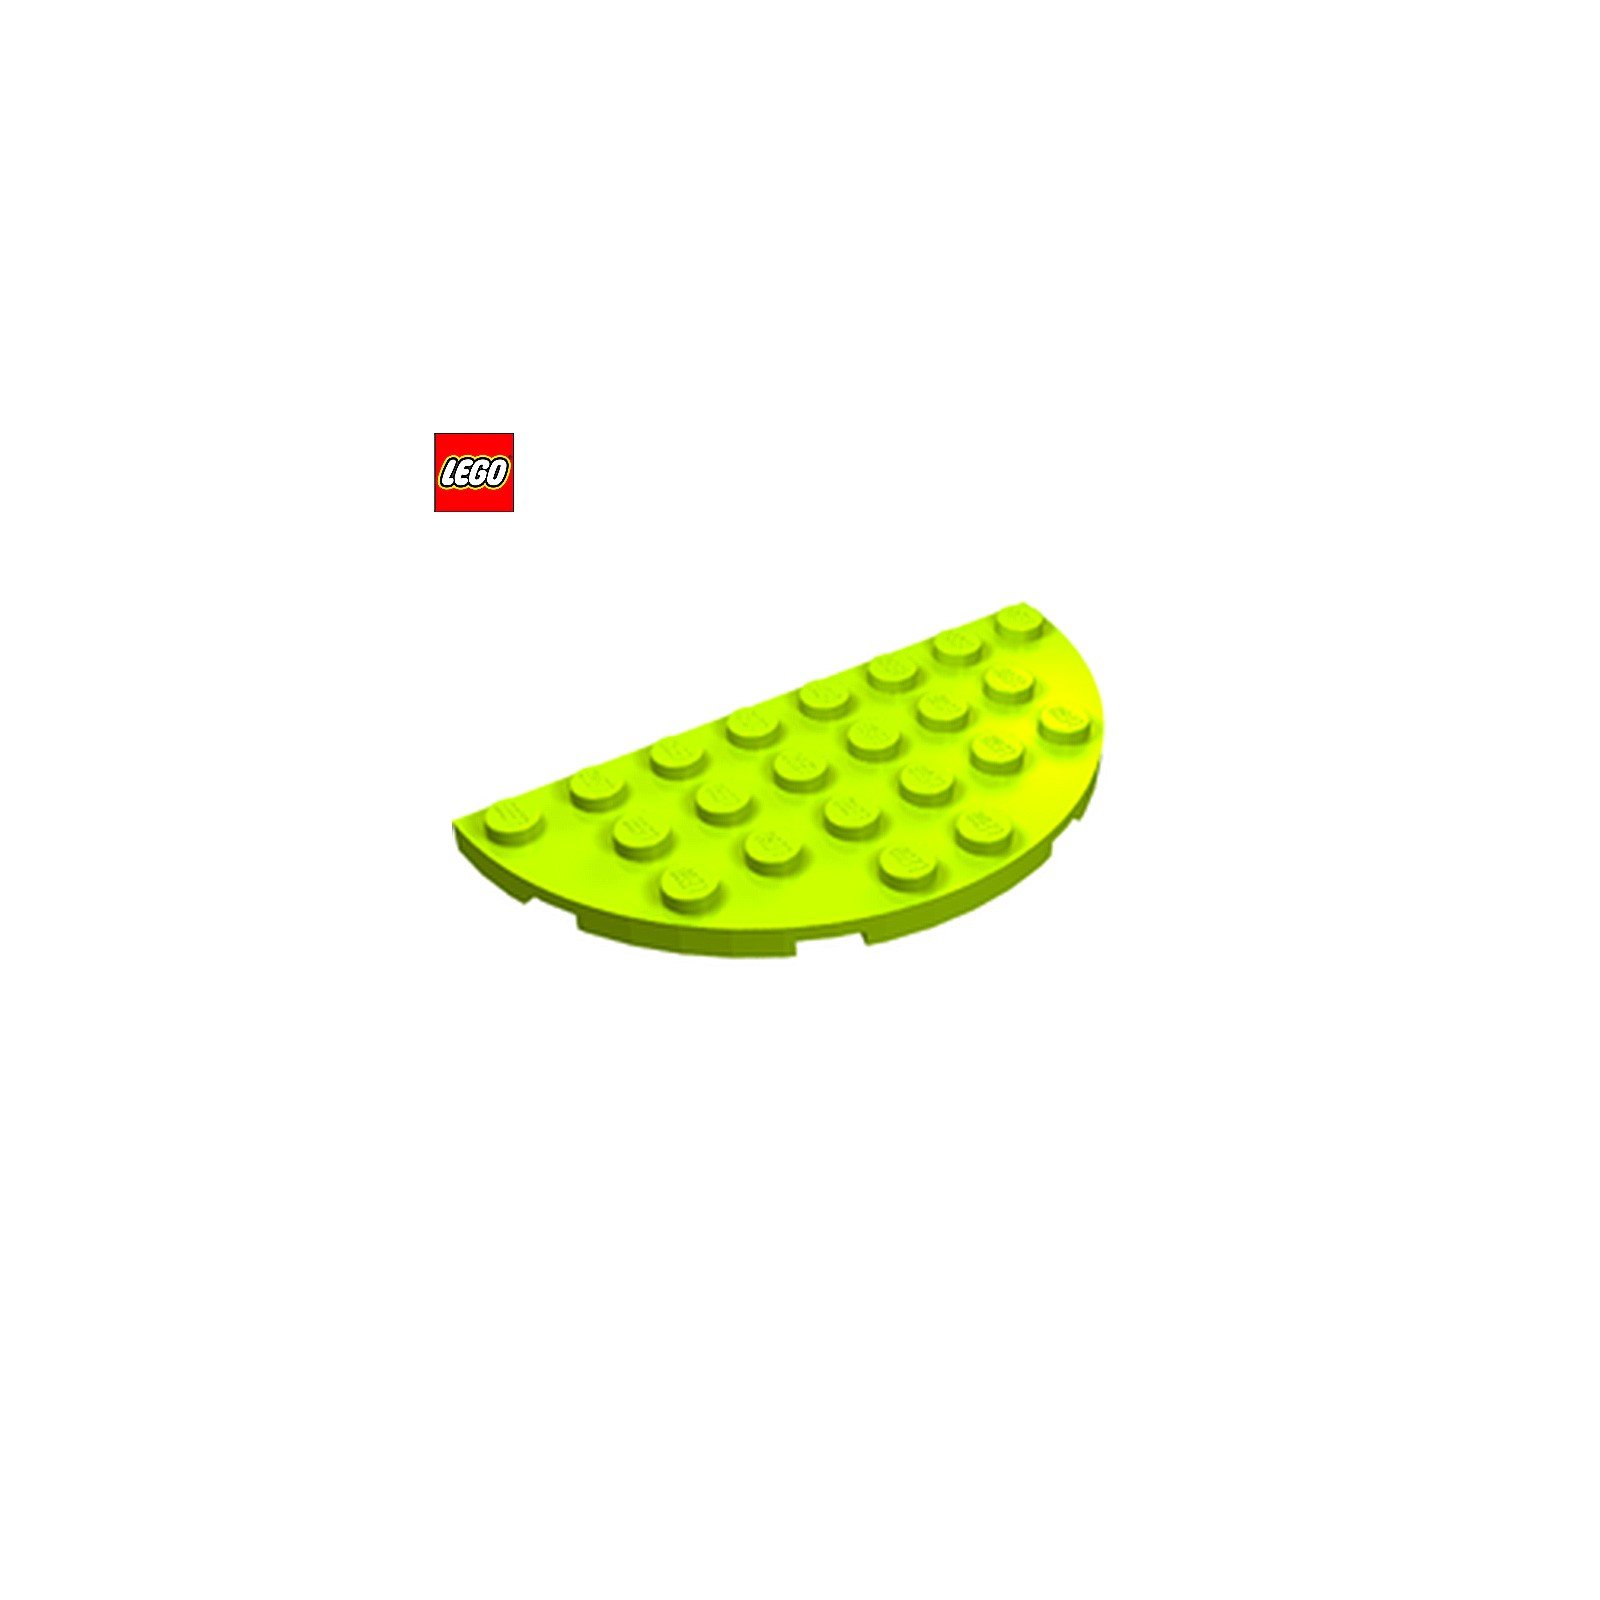 Plate 4x8 avec 2 coins arrondis - Pièce LEGO® 22888